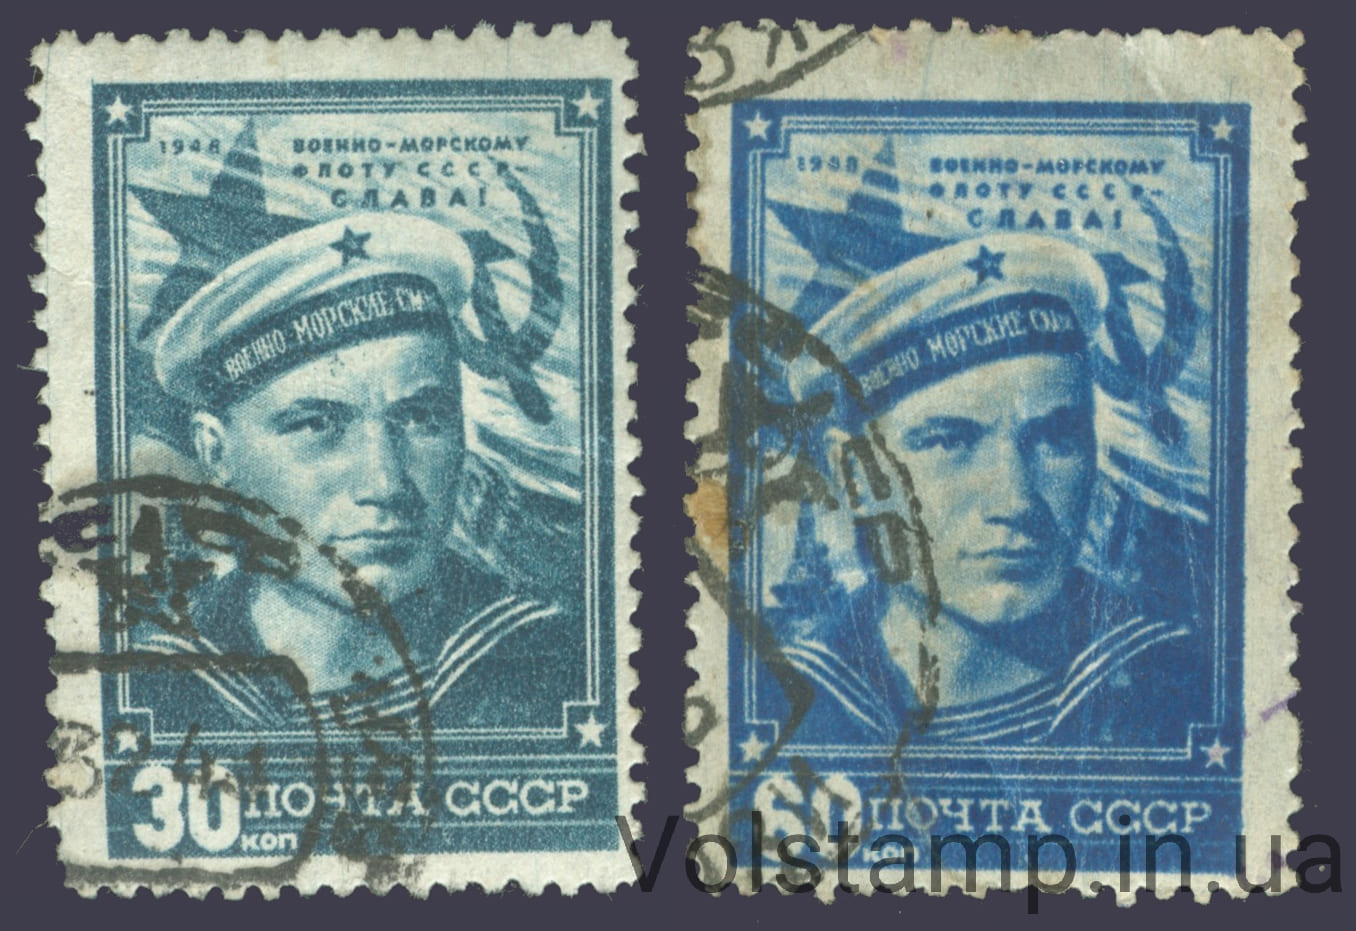 1948 серия марок День Военно-Морского Флота - Гашеные №1216-1217